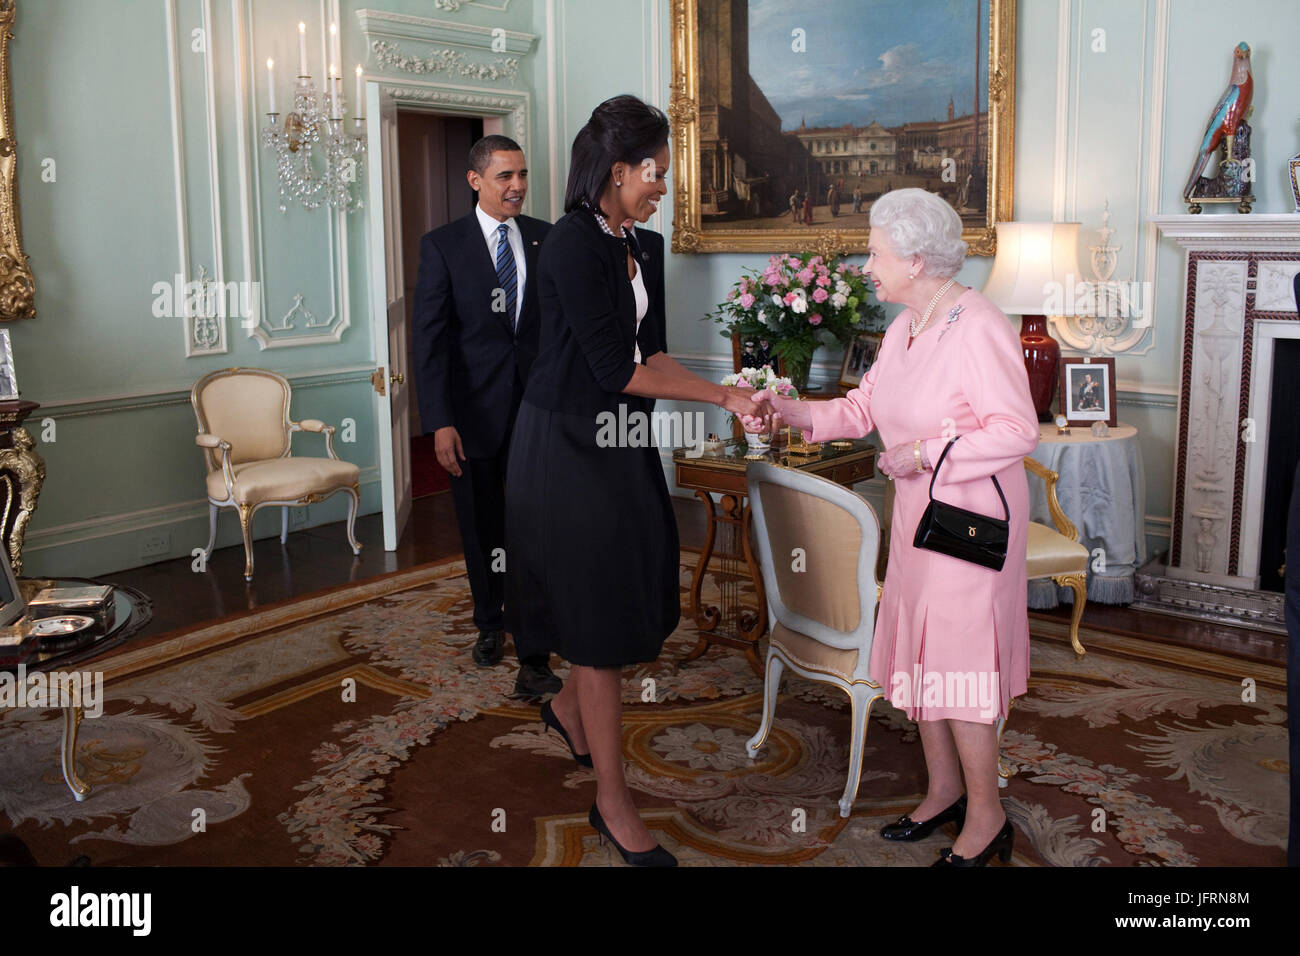 Le président Barack Obama et Première Dame Michelle Obama est accueilli par Sa Majesté la Reine Elizabeth II à Buckingham Palace à Londres, le 1er avril 2009. Photo Officiel de la Maison Blanche par Pete Souza Banque D'Images